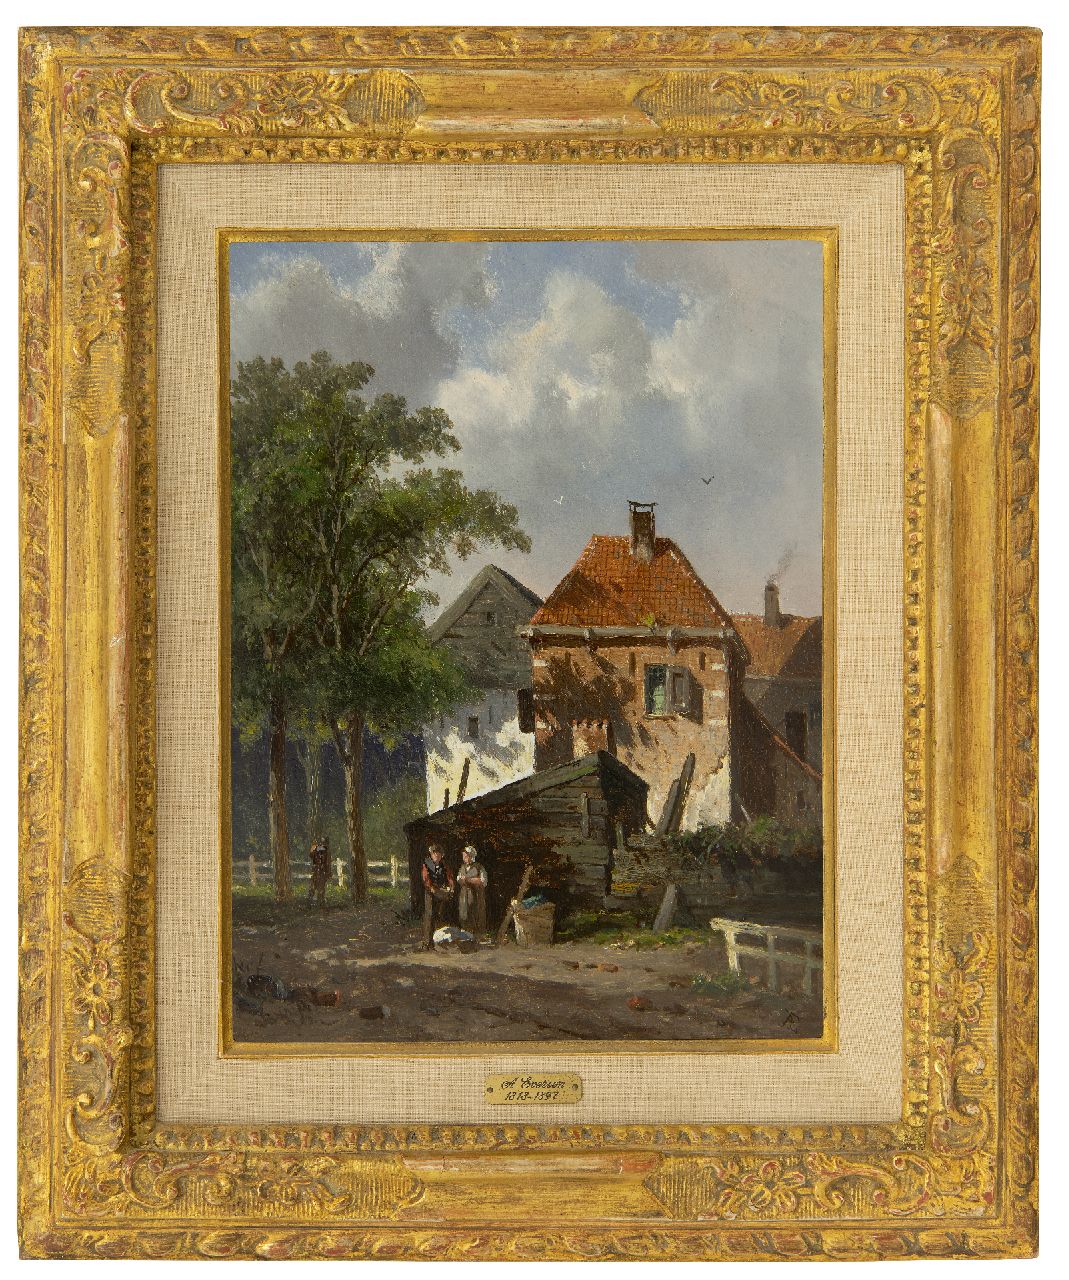 Eversen A.  | Adrianus Eversen | Schilderijen te koop aangeboden | Zonnig dorpsgezicht, olieverf op paneel 27,0 x 20,0 cm, gesigneerd rechtsonder met monogram